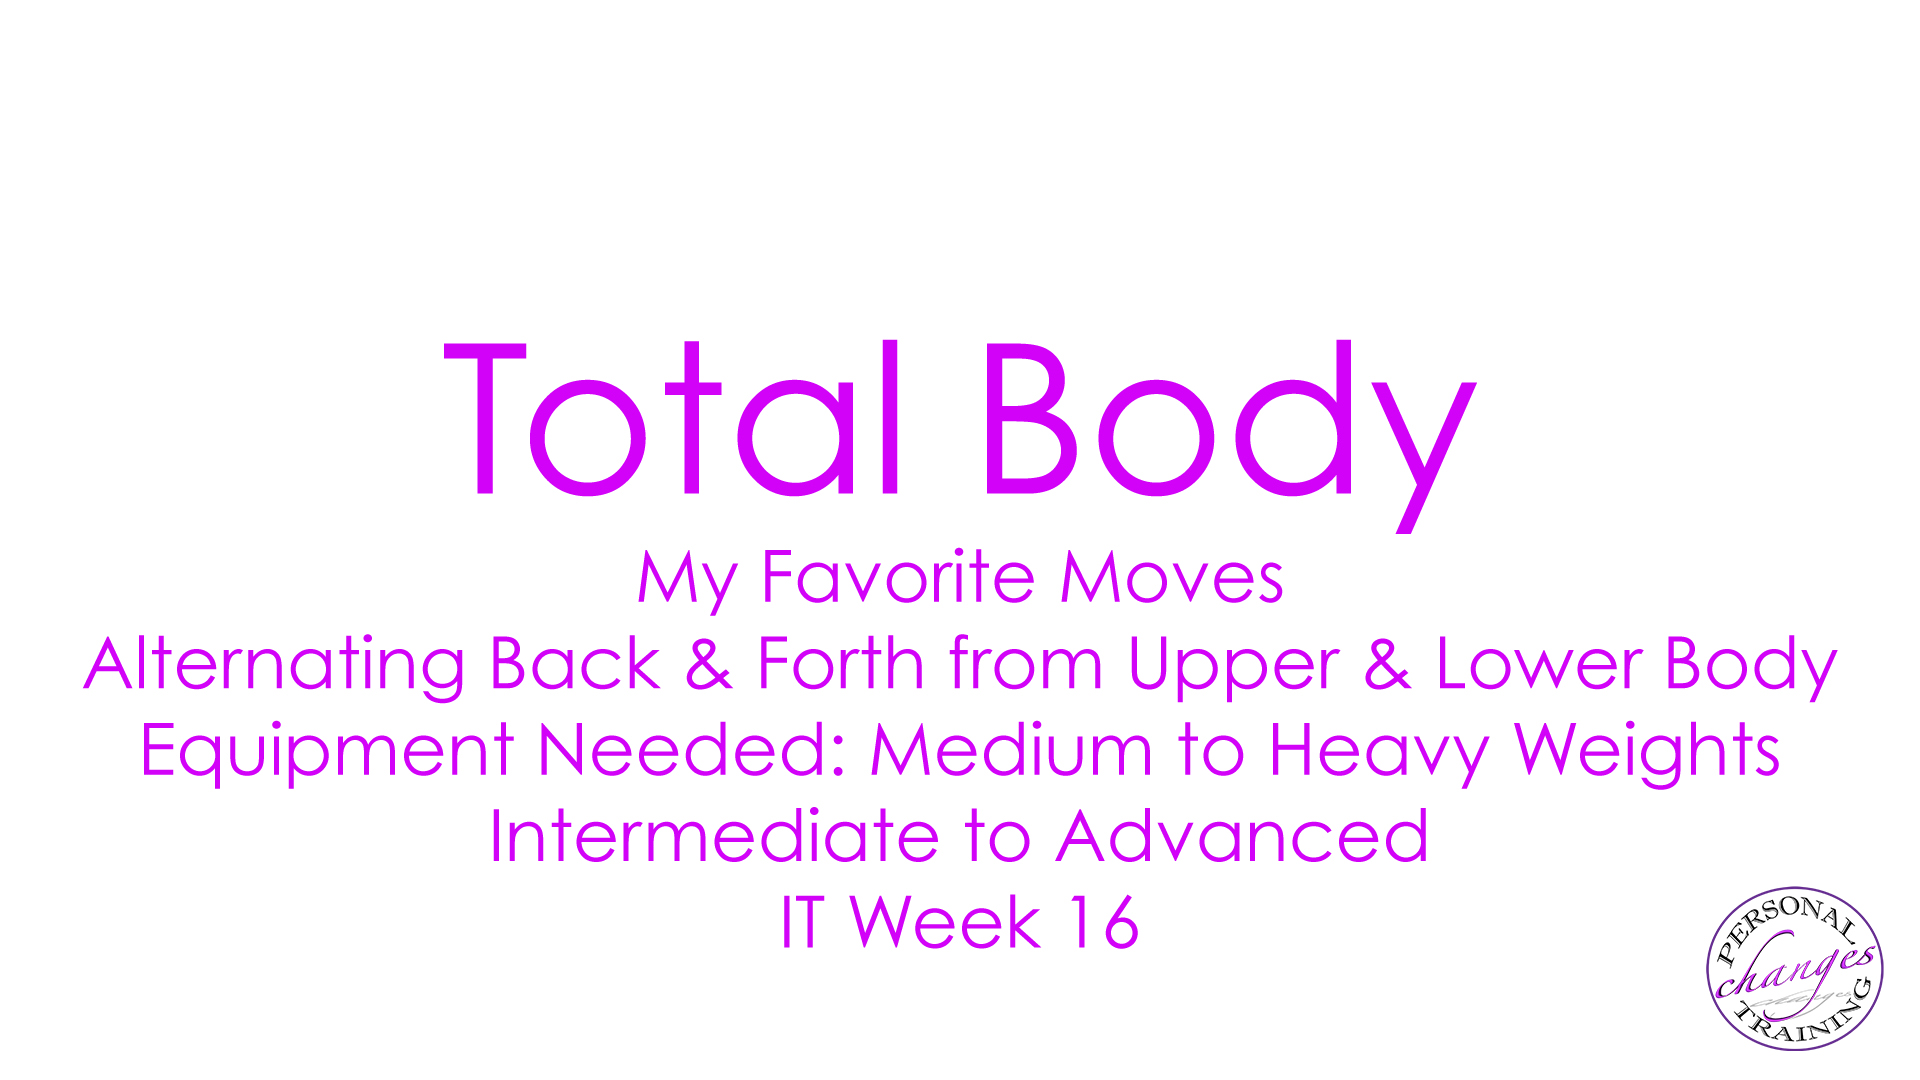 IT Week 16 Total Body